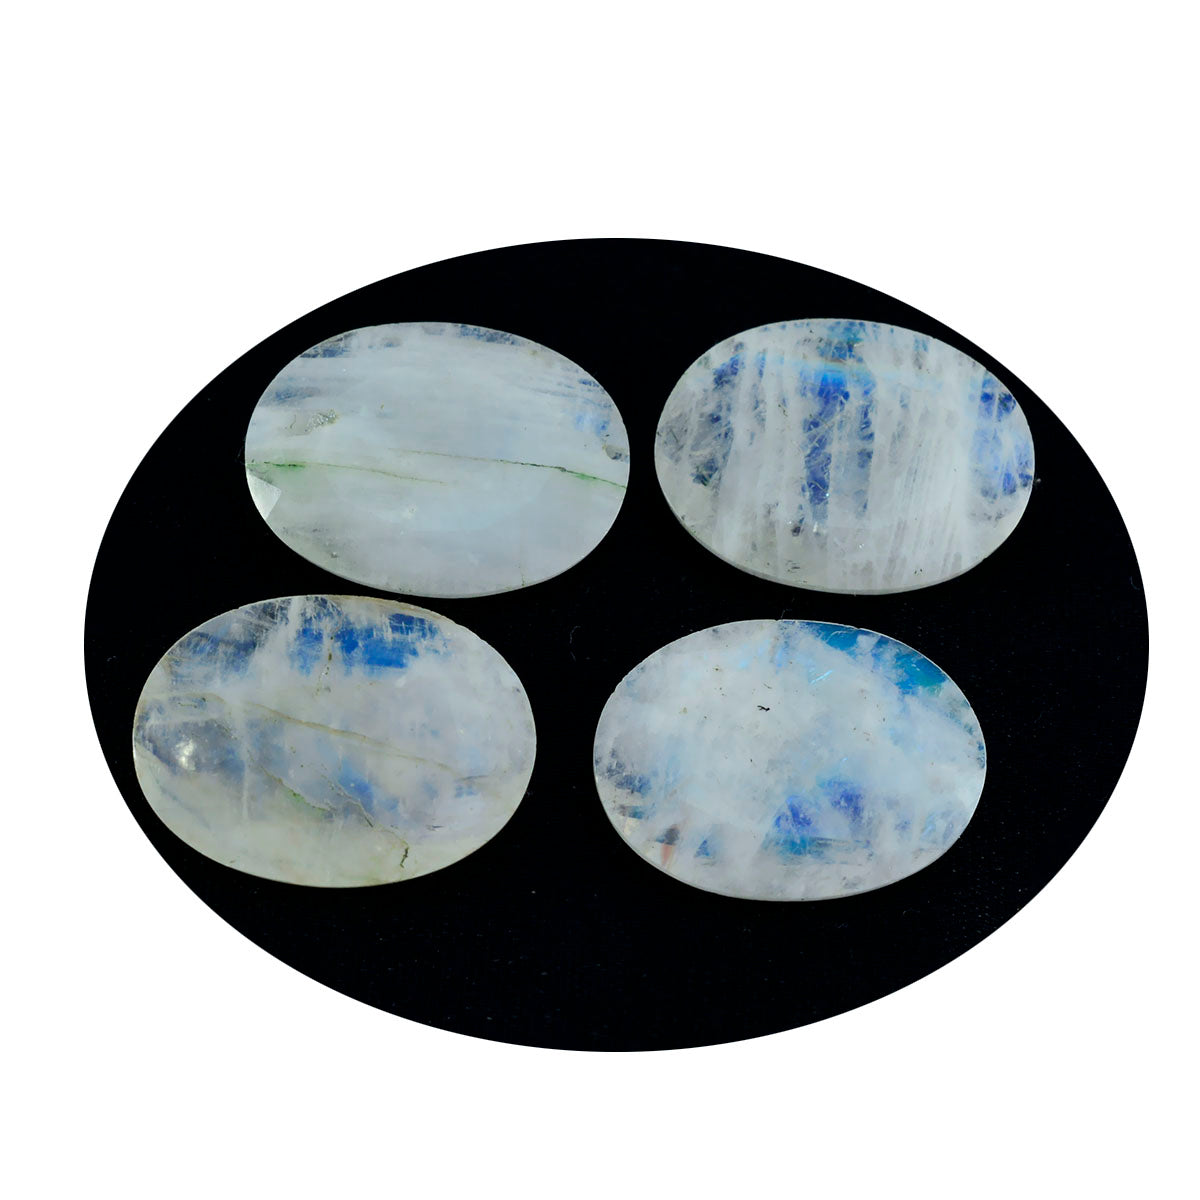 riyogems 1 шт., белый радужный лунный камень, ограненный 10x12 мм, овальной формы, хорошее качество, свободный драгоценный камень